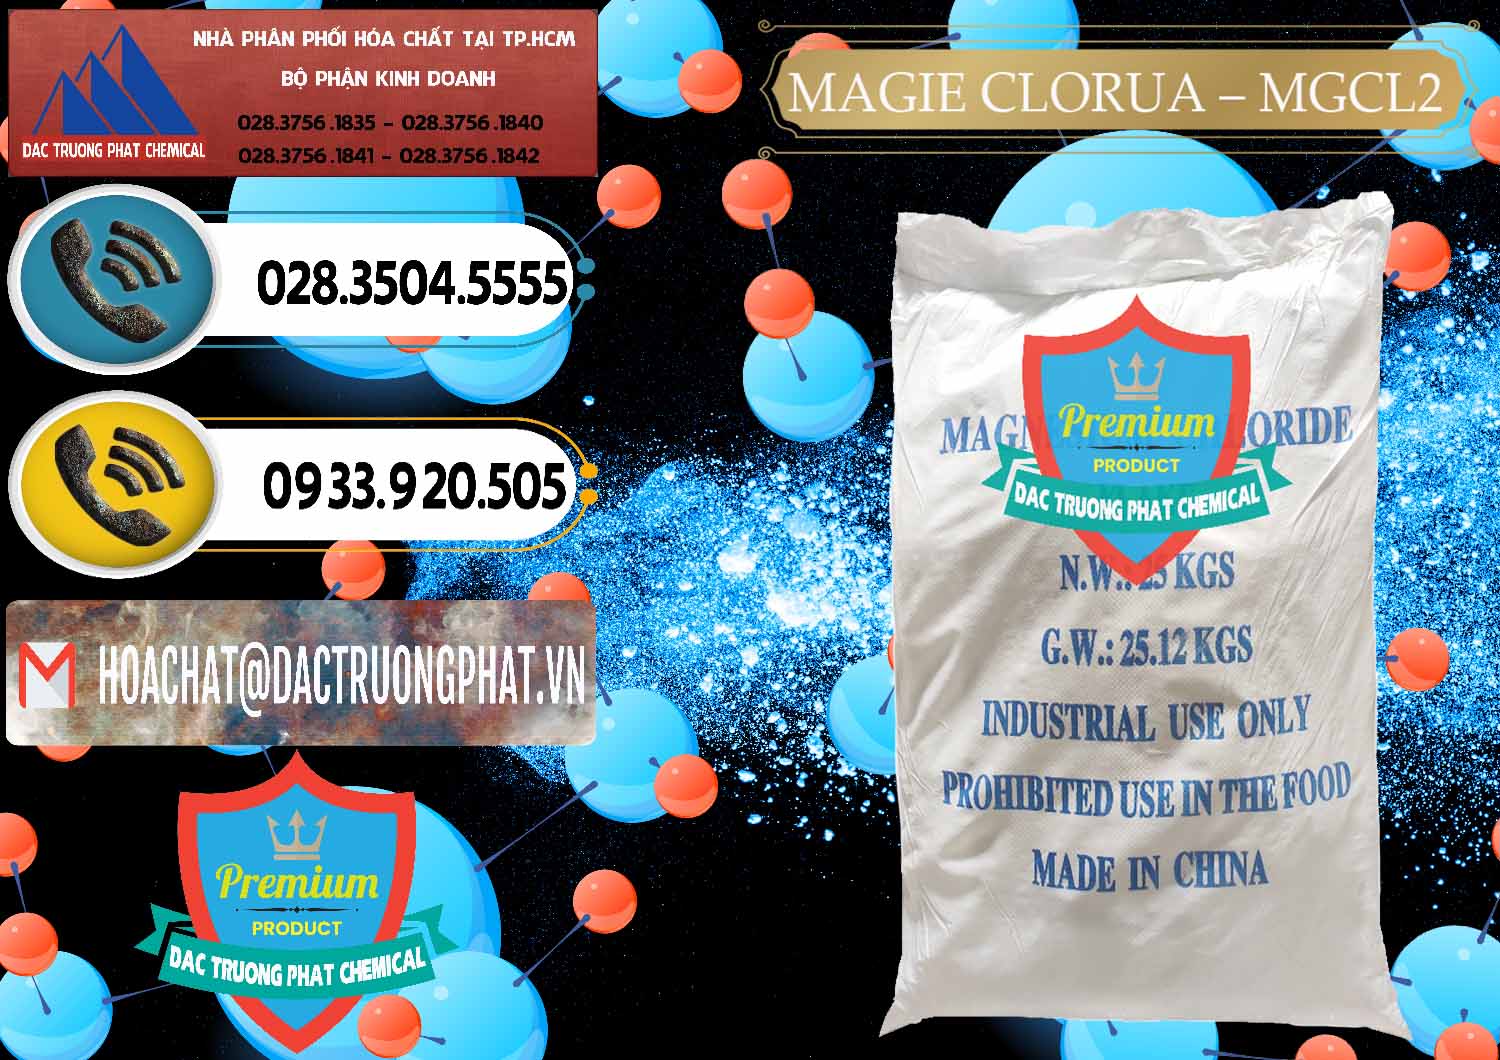 Nơi cung cấp và bán Magie Clorua – MGCL2 96% Dạng Vảy Trung Quốc China - 0091 - Cty chuyên phân phối ( nhập khẩu ) hóa chất tại TP.HCM - hoachatdetnhuom.vn